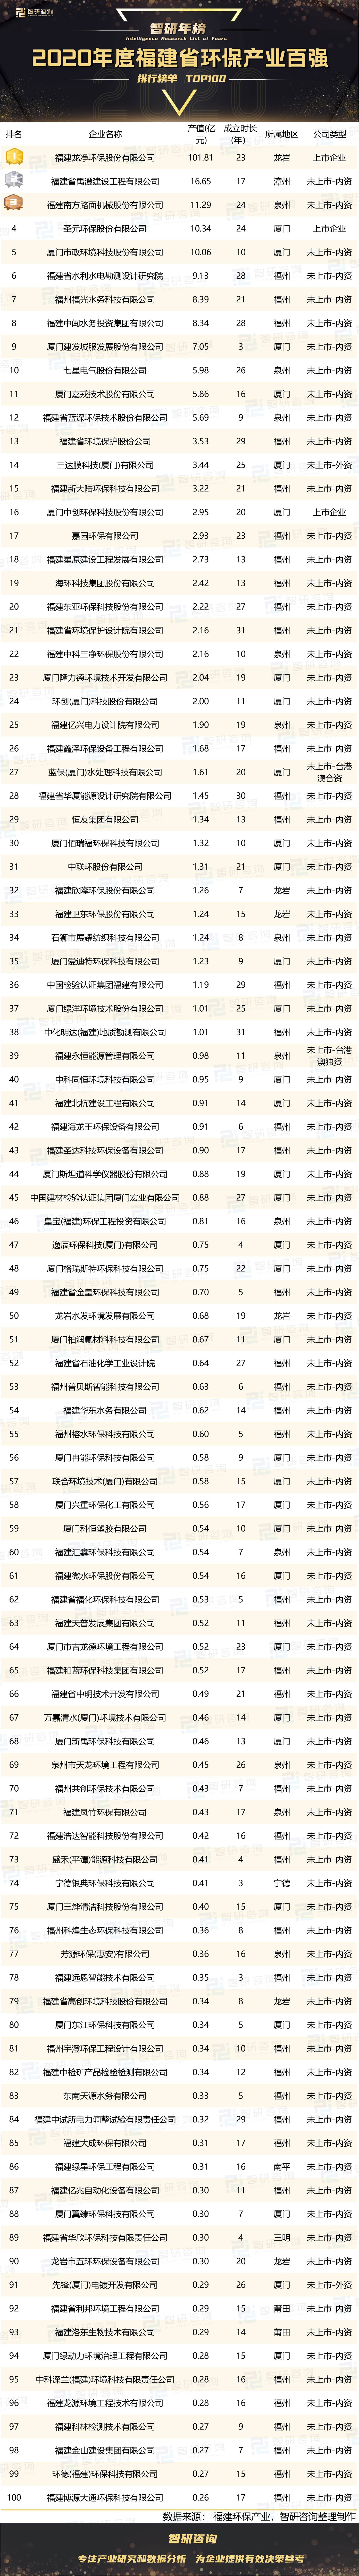 环保行业排行_2020年度福建省环保产业百强排行榜:福州上榜企业最多(附年榜TOP...